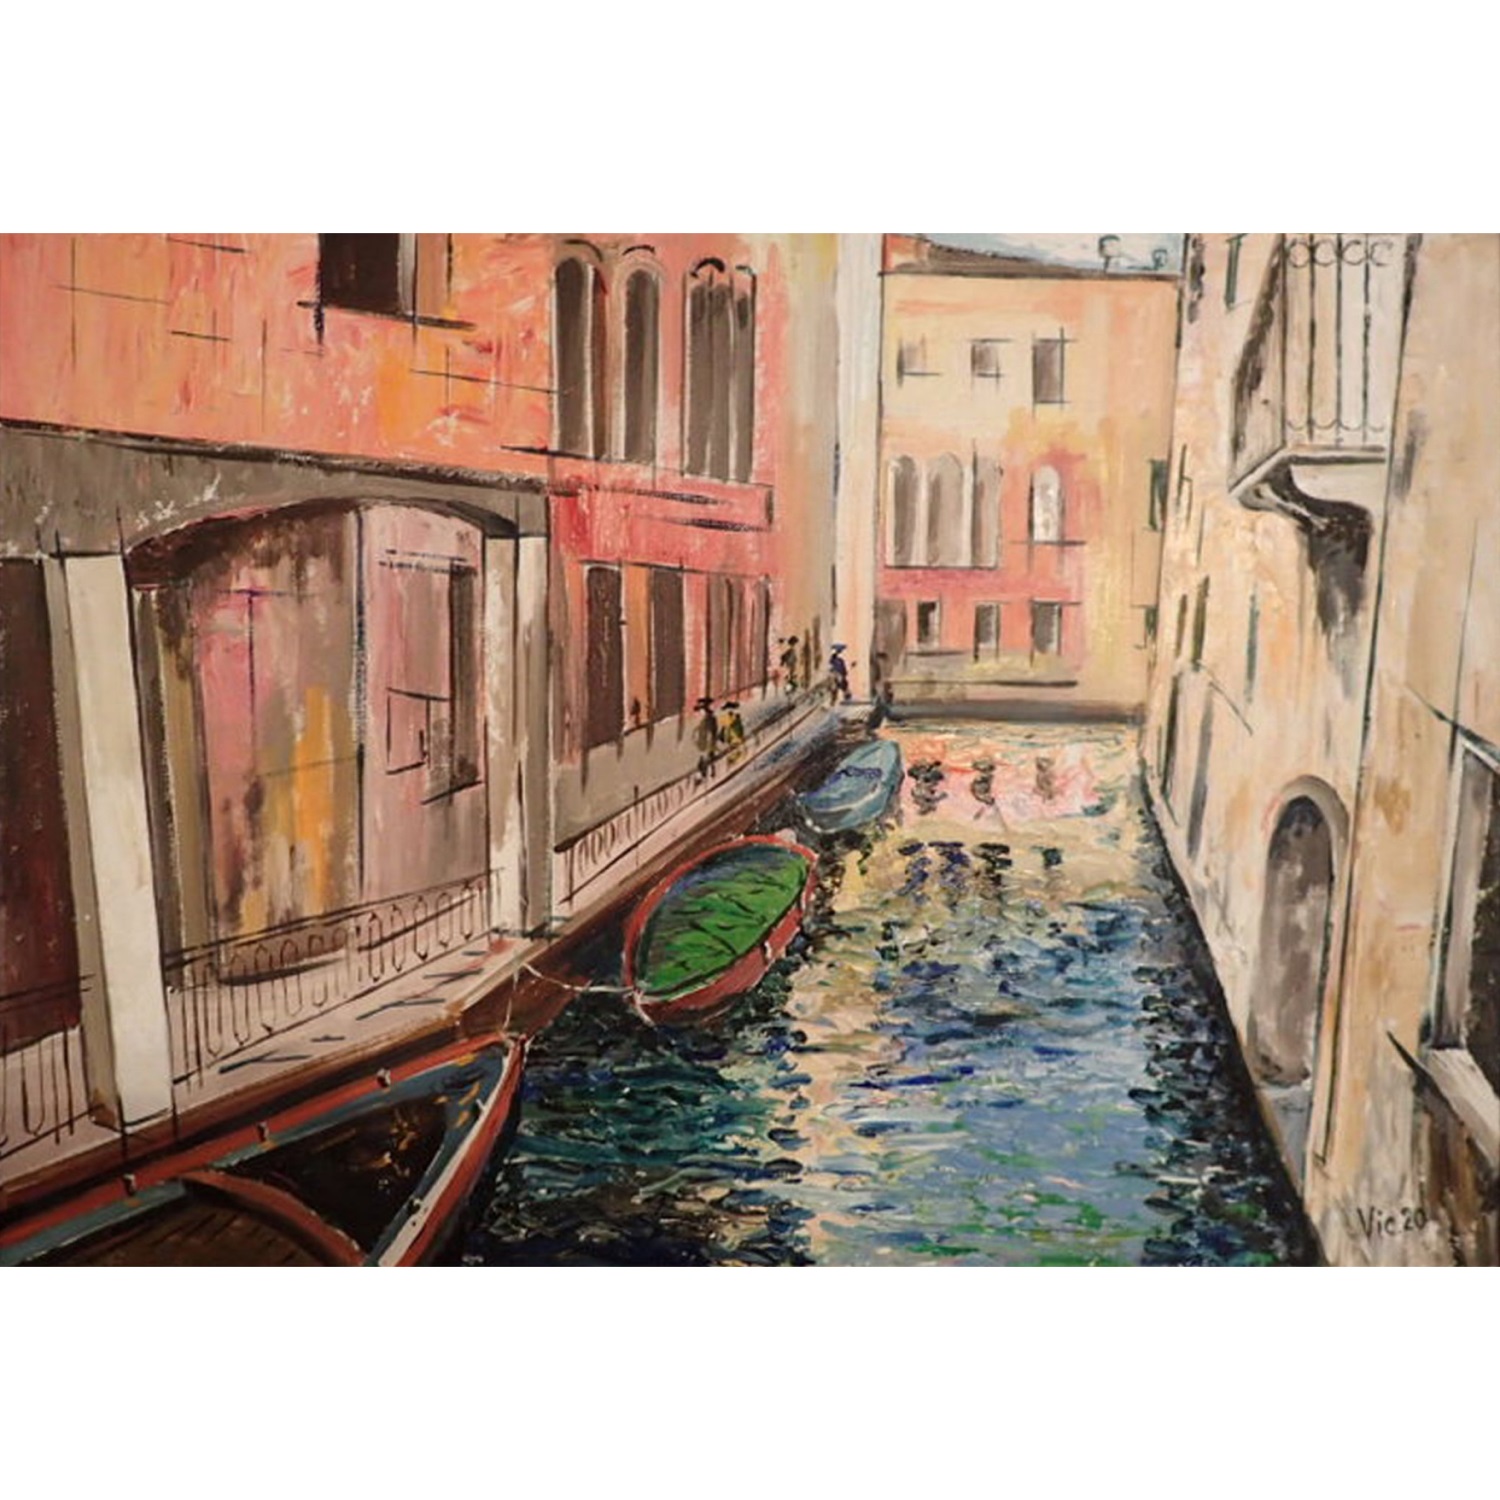 Нарисовать уголок венеции с домами каналами и гондолами 3 класс детский рисунок